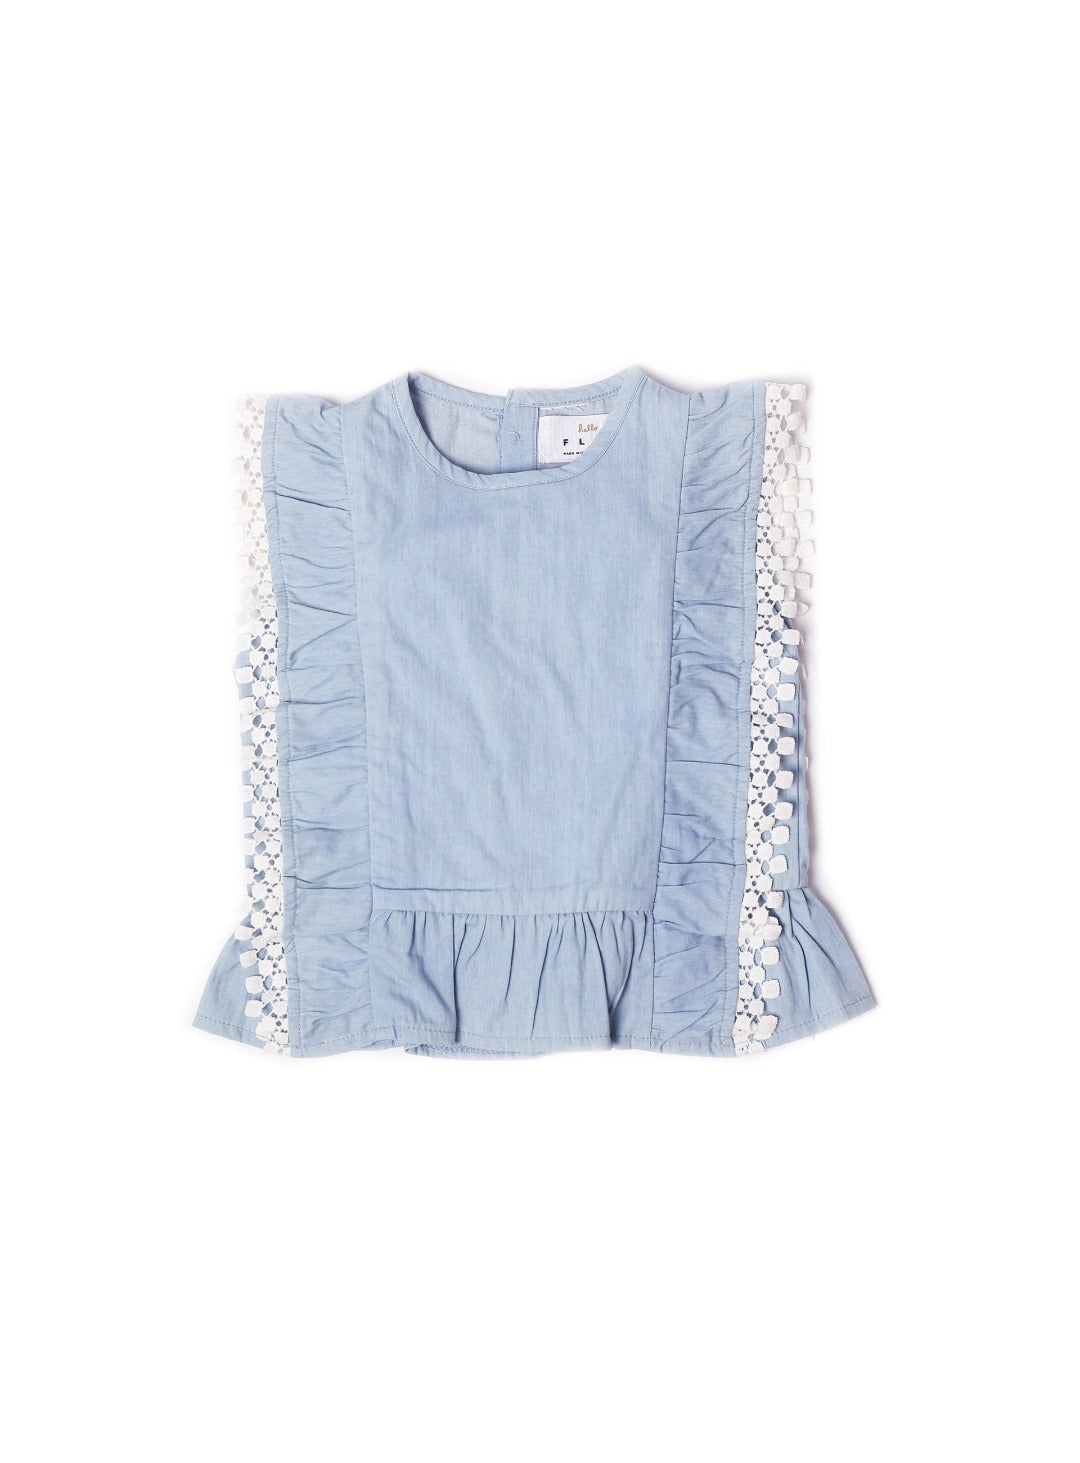 washed blue denim sleeveless top with lace fringe